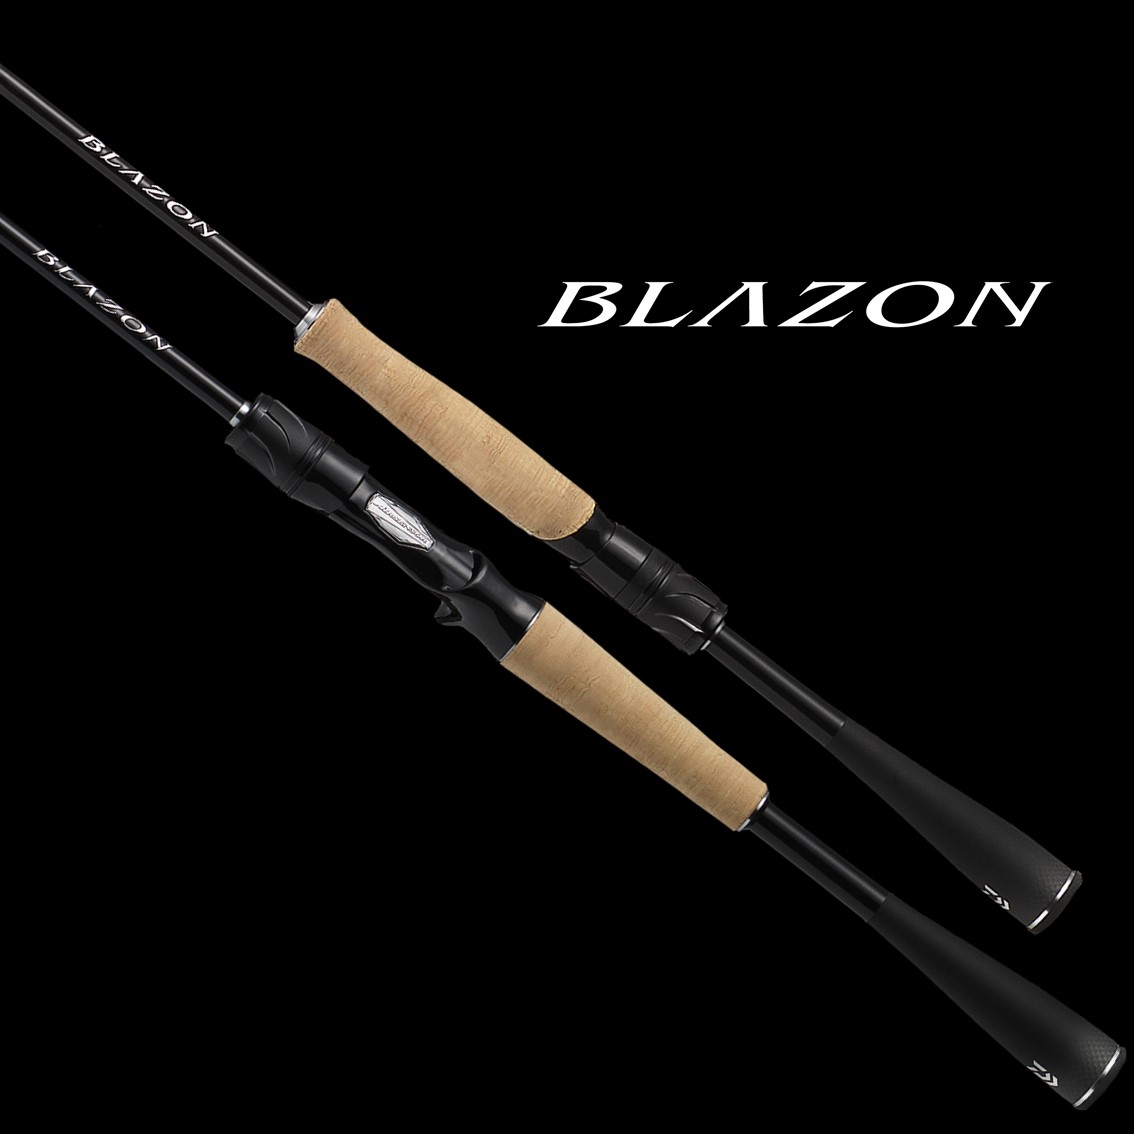 ダイワ ブレイゾン C70XH (バスロッド ベイト)(大型商品A) - 釣り具の販売、通販なら、フィッシング遊-WEB本店 ダイワ ／シマノ／がまかつの釣具ならおまかせ